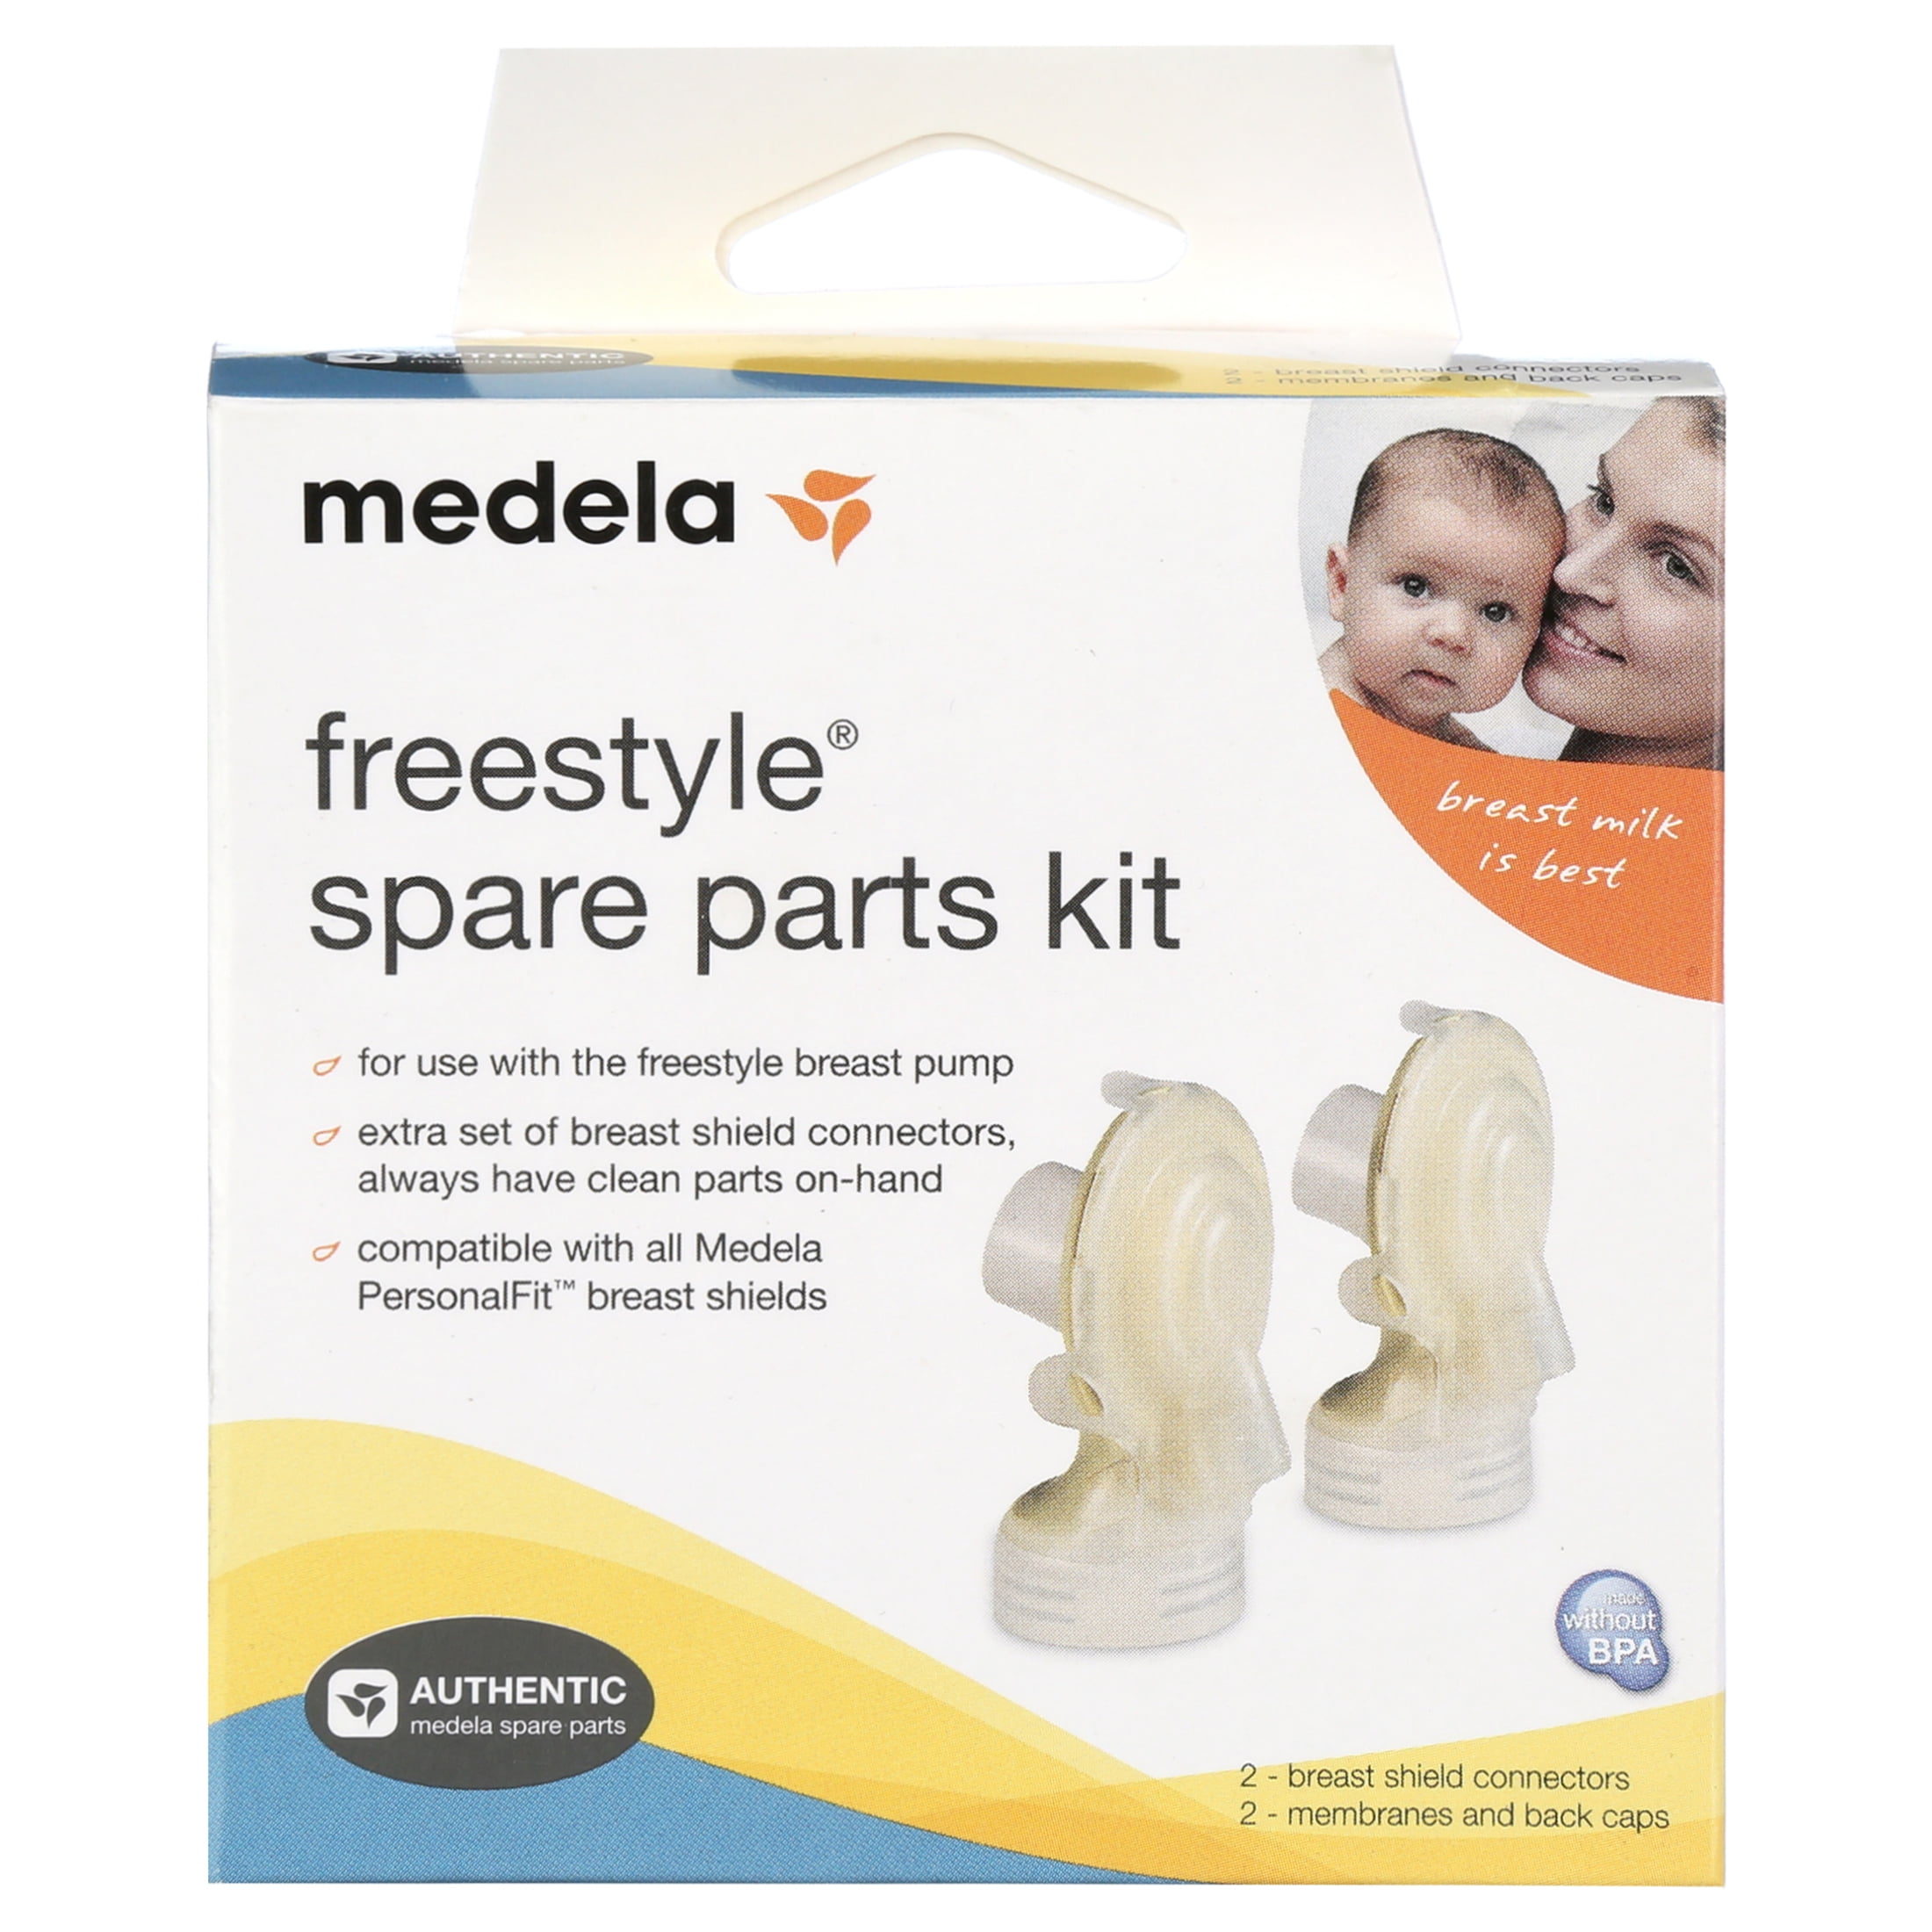 vervormen cursief Mooie jurk Medela Freestyle Spare Parts Kit - Walmart.com